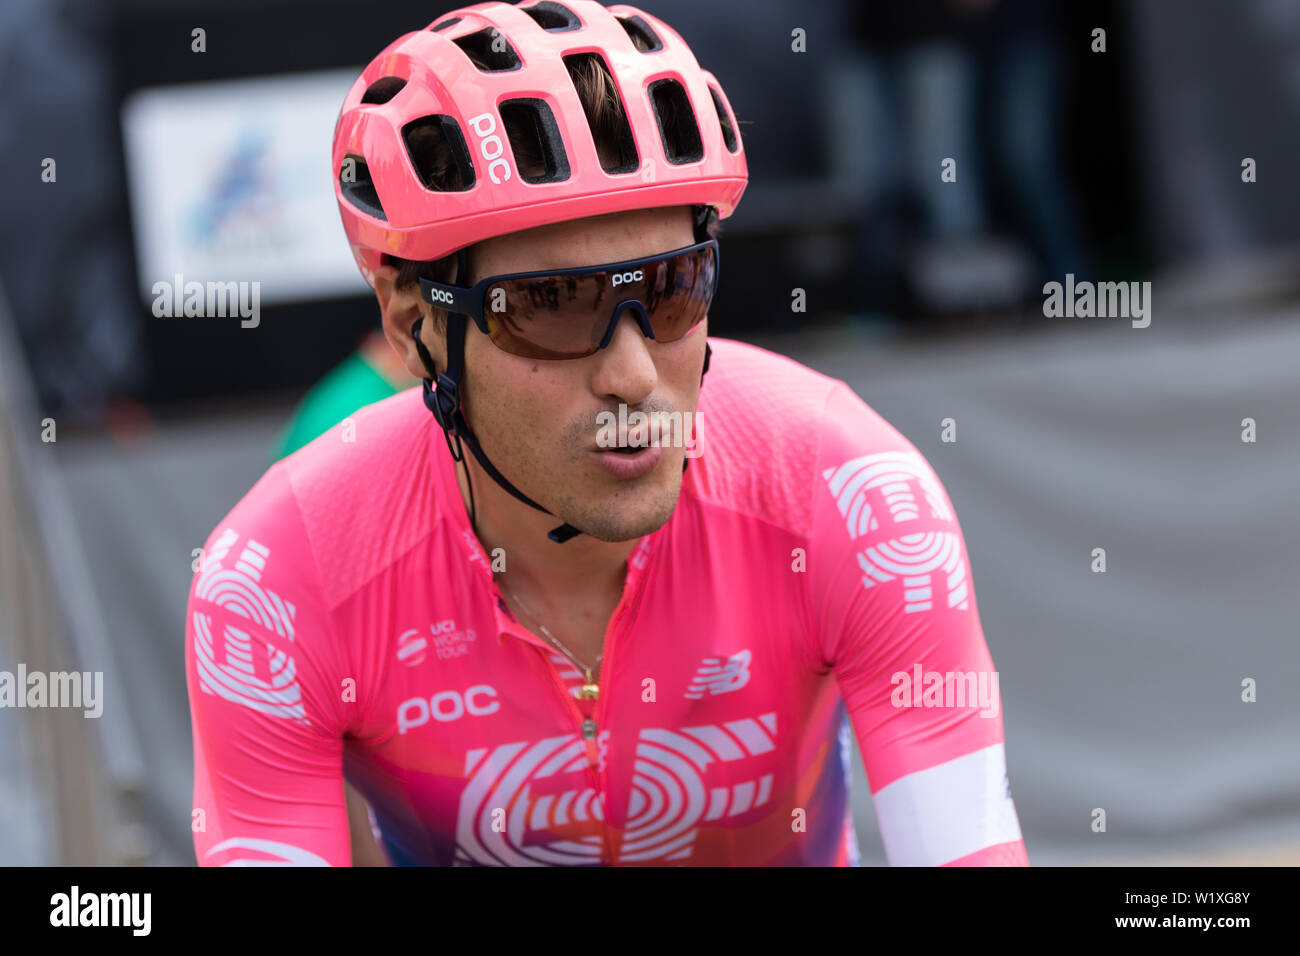 Alberto Bettiol ciclista italiano del team ciclistico istruzione prima del 2019 presso il Criterium du Dauphine Foto Stock